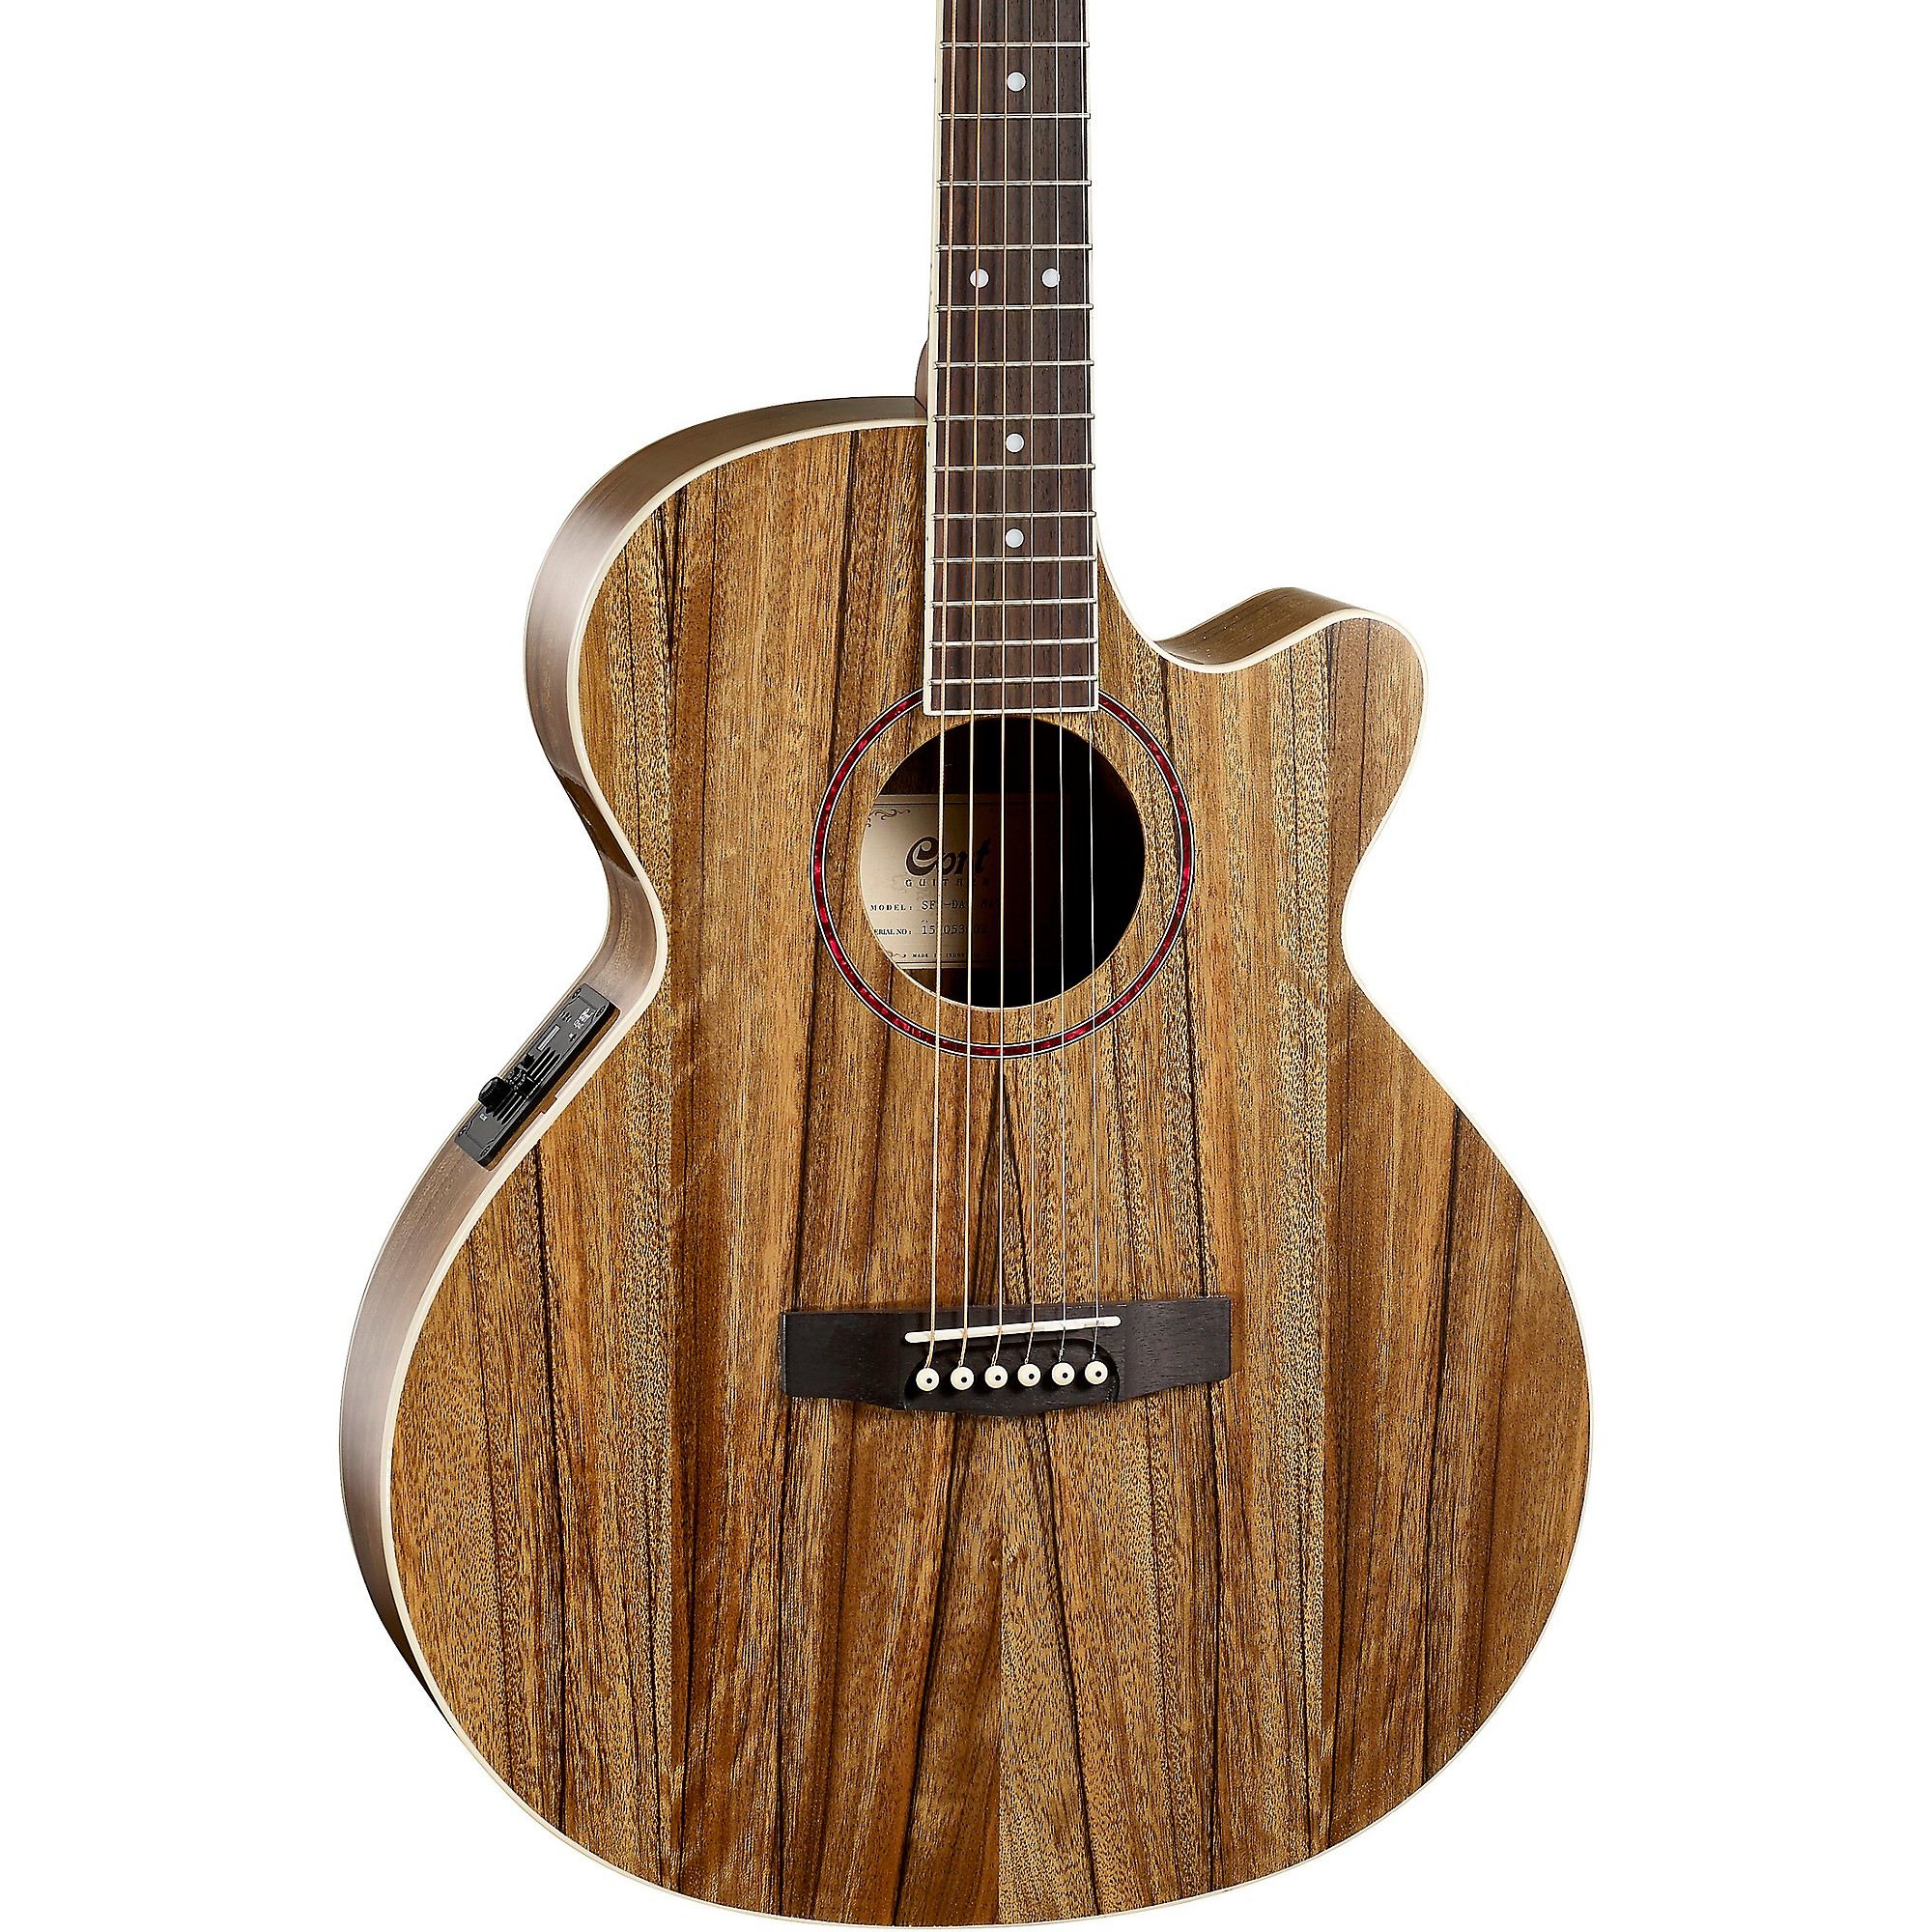 Акустически-электрическая гитара Cort SFX-DAO серии SFX с тонким корпусом Natural cort sfx dao nat